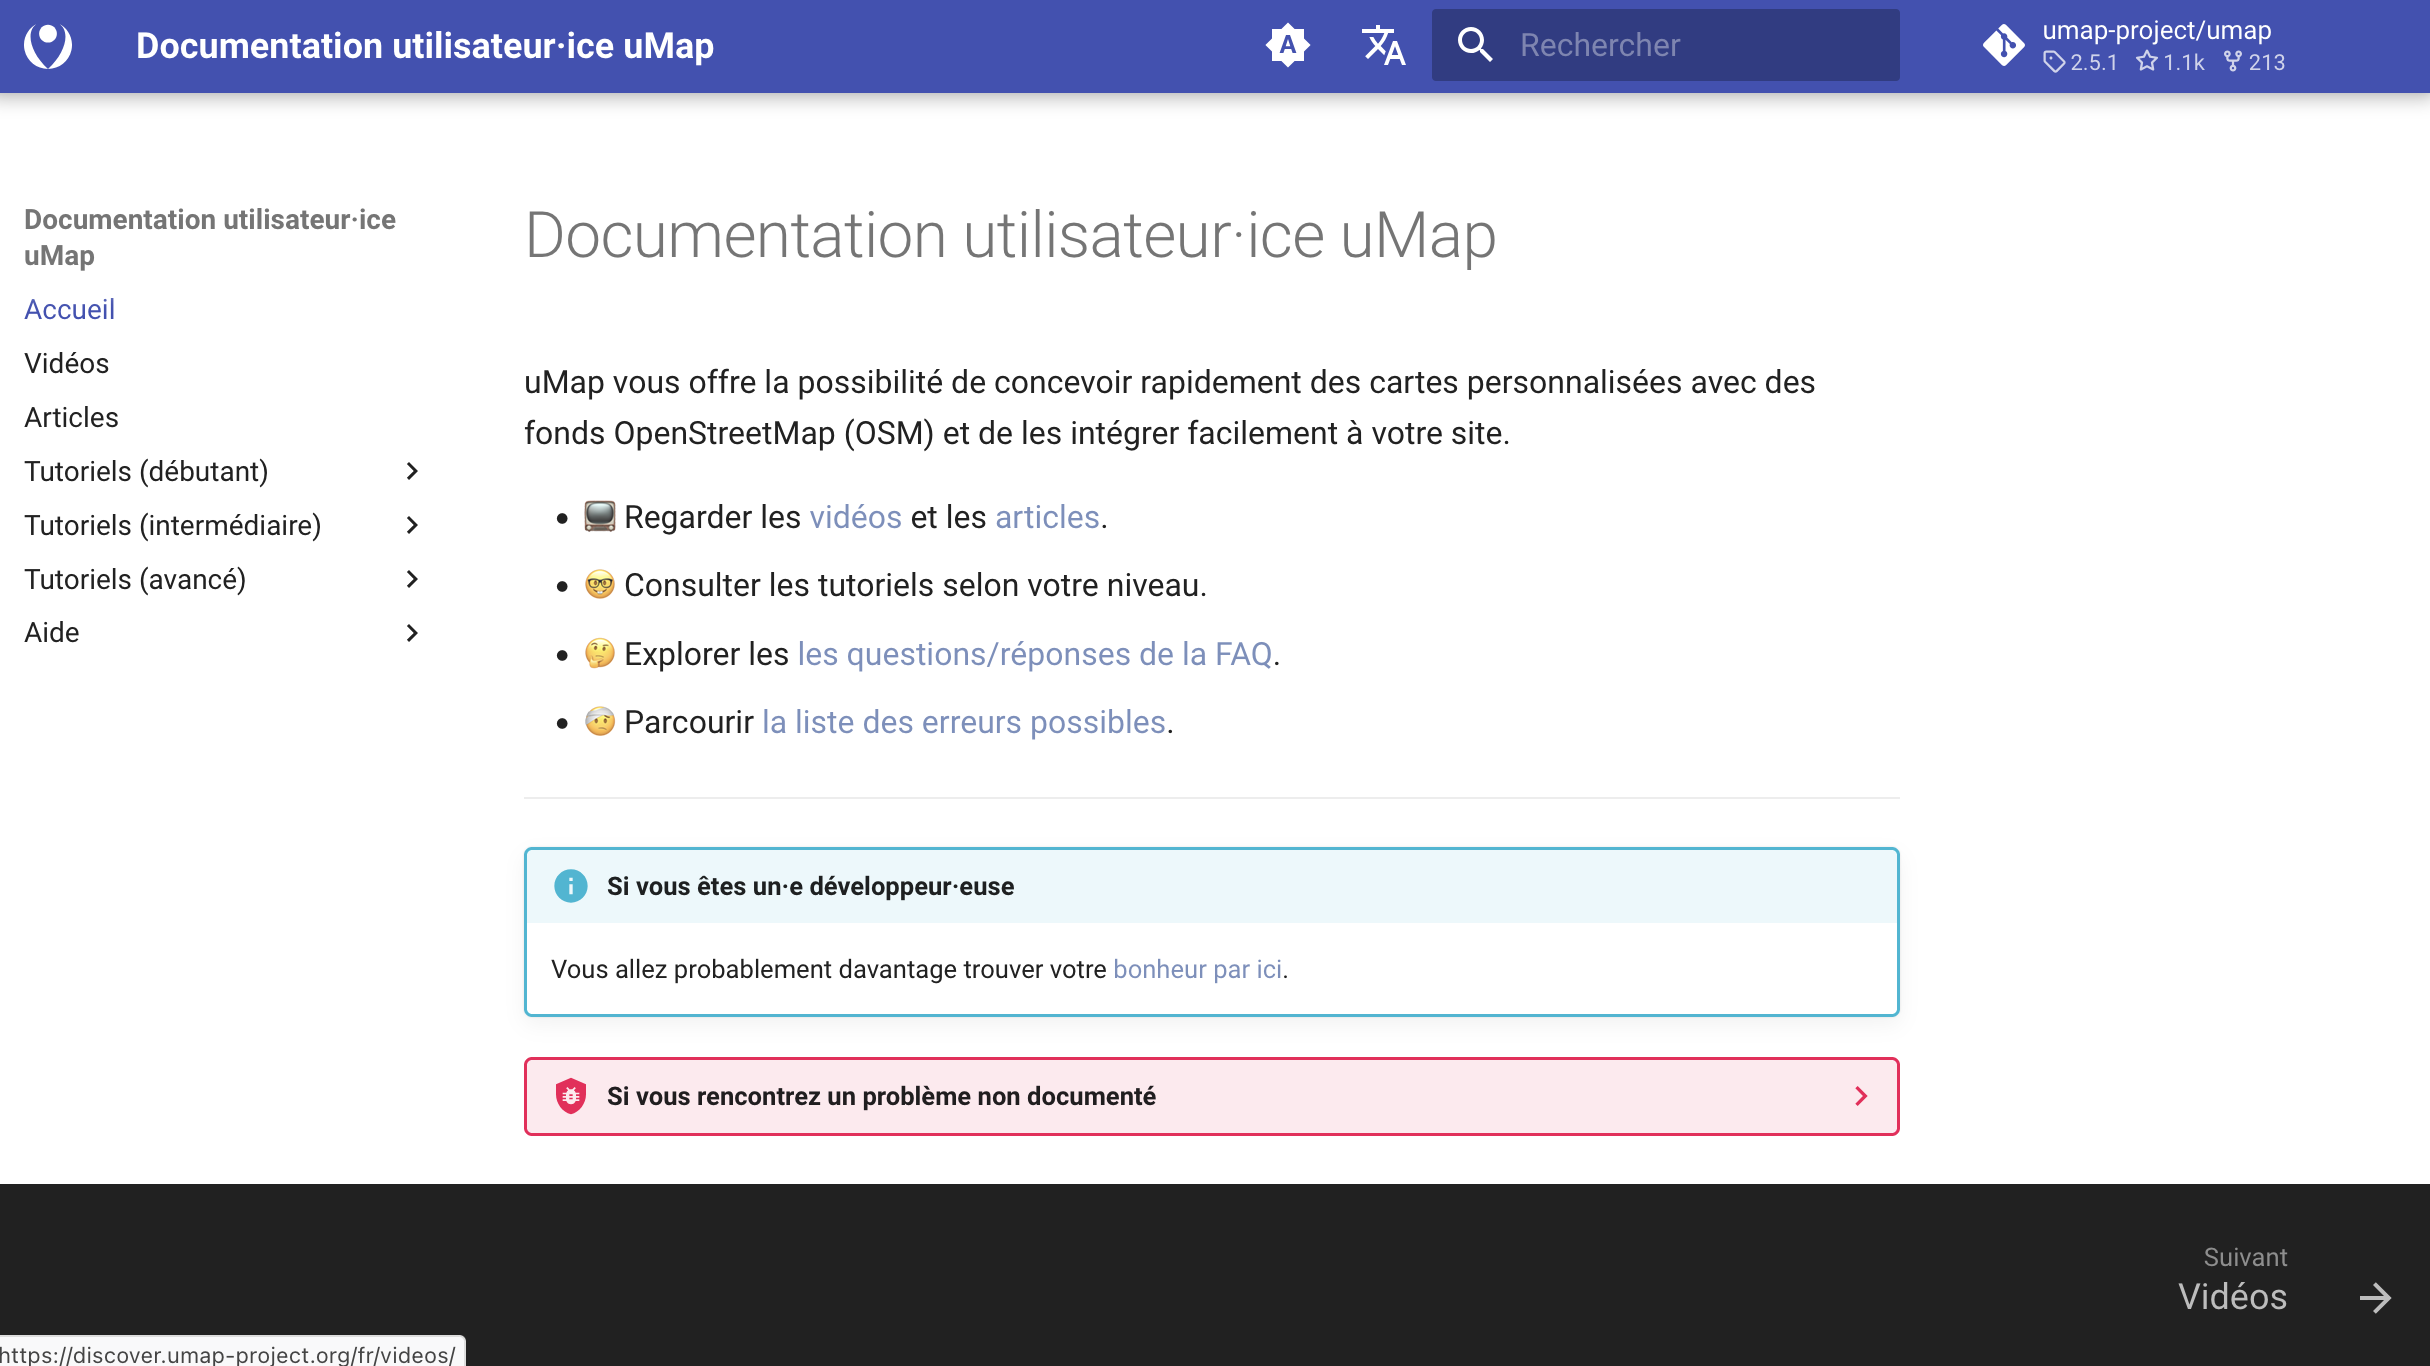 Capture d'écran du site discover.umap-project.org en français.